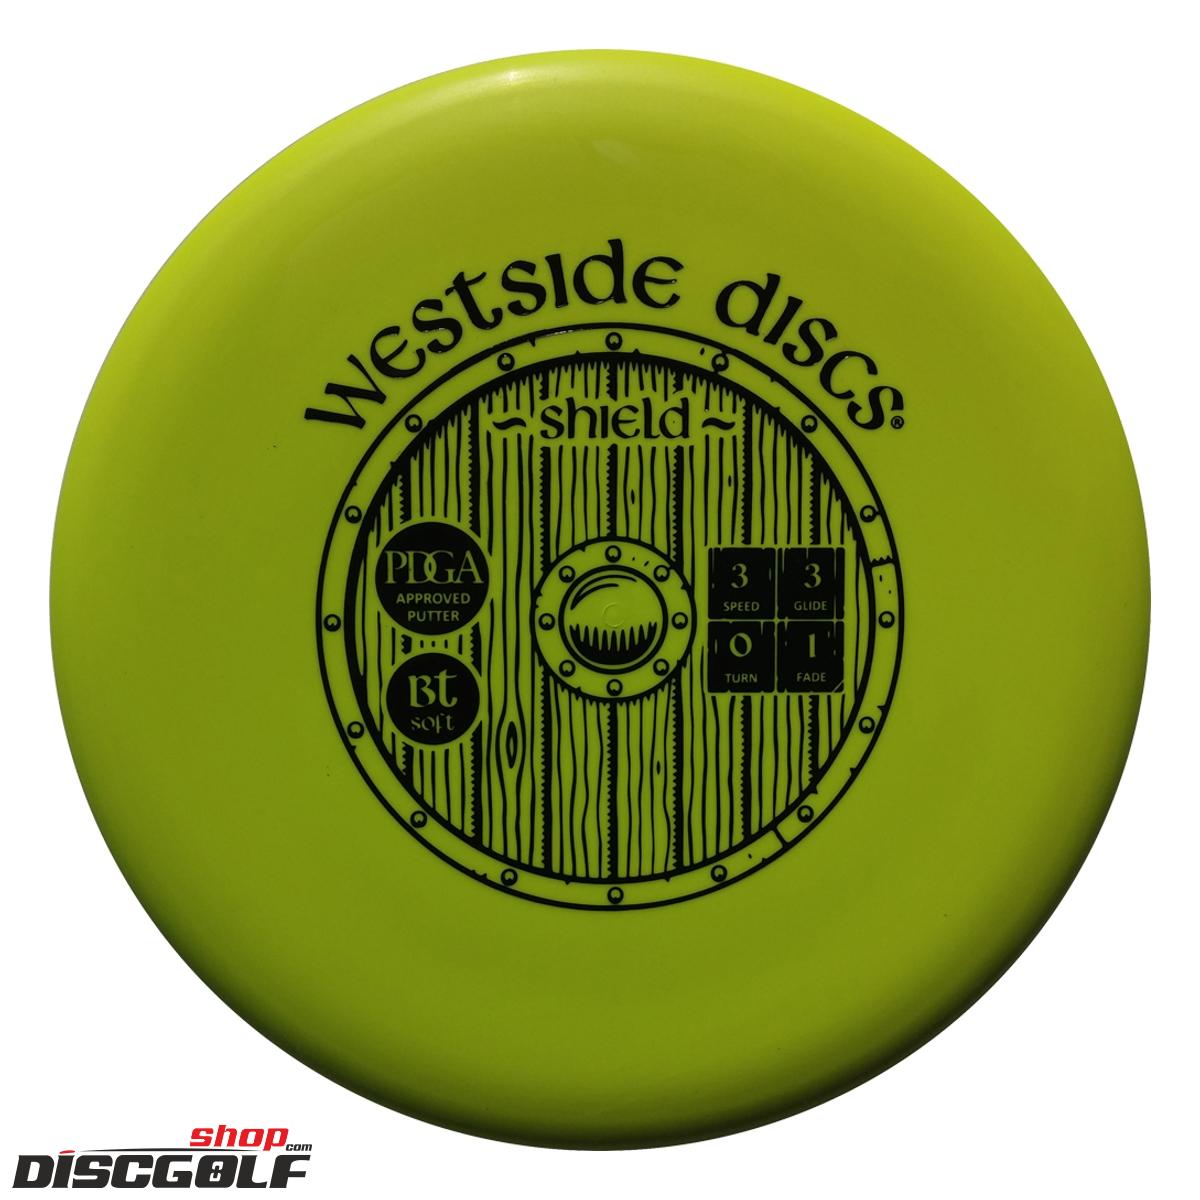 Westside Shield BT Soft (discgolf)